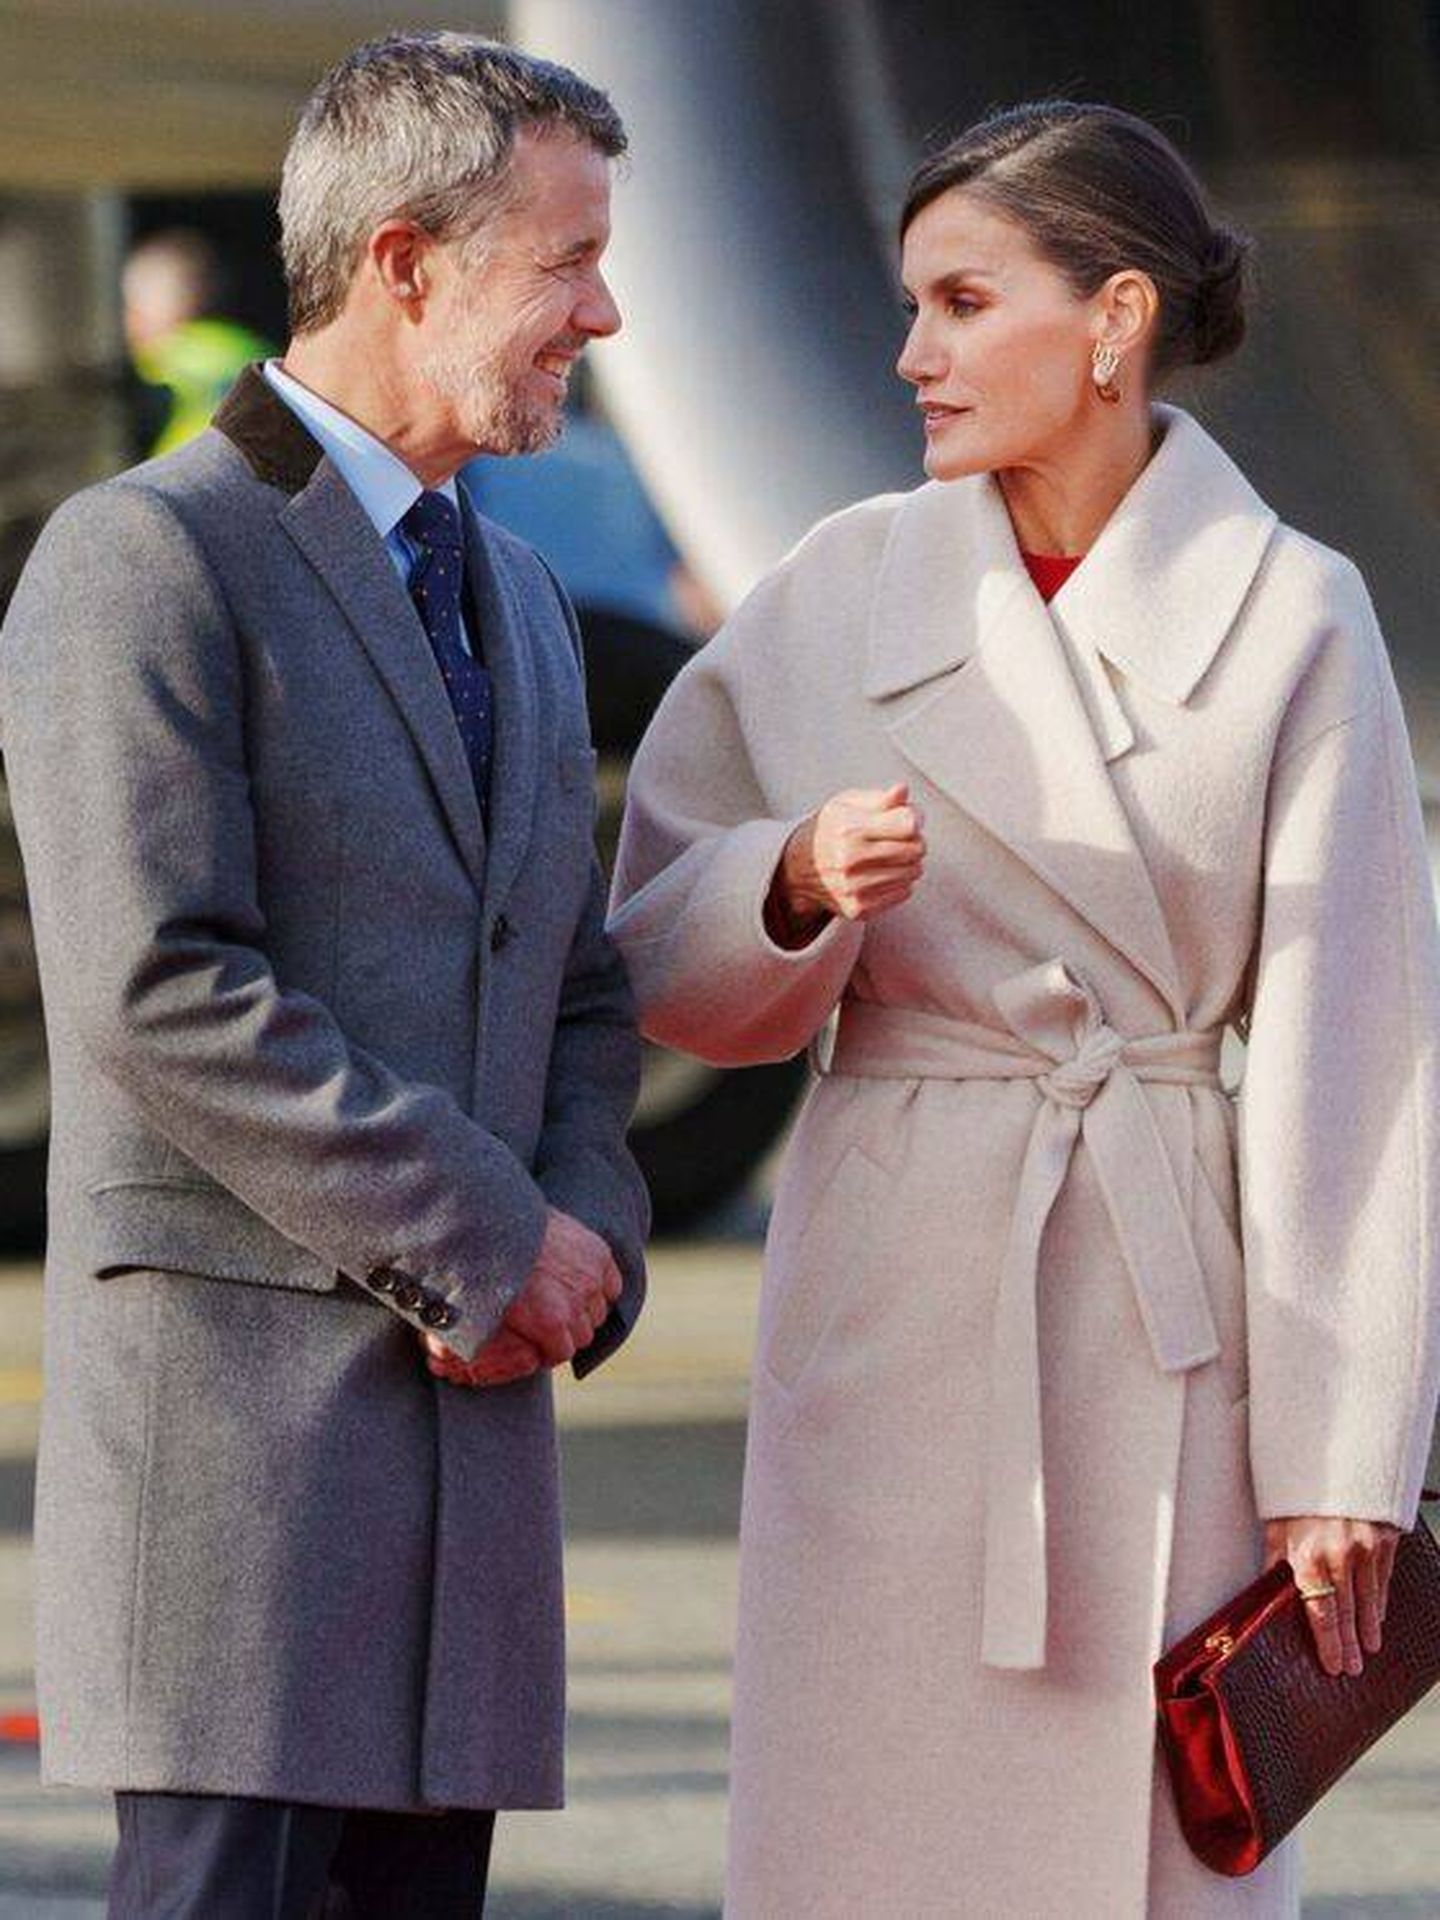  La reina Letizia conversa con el príncipe Federico. (Reuters)